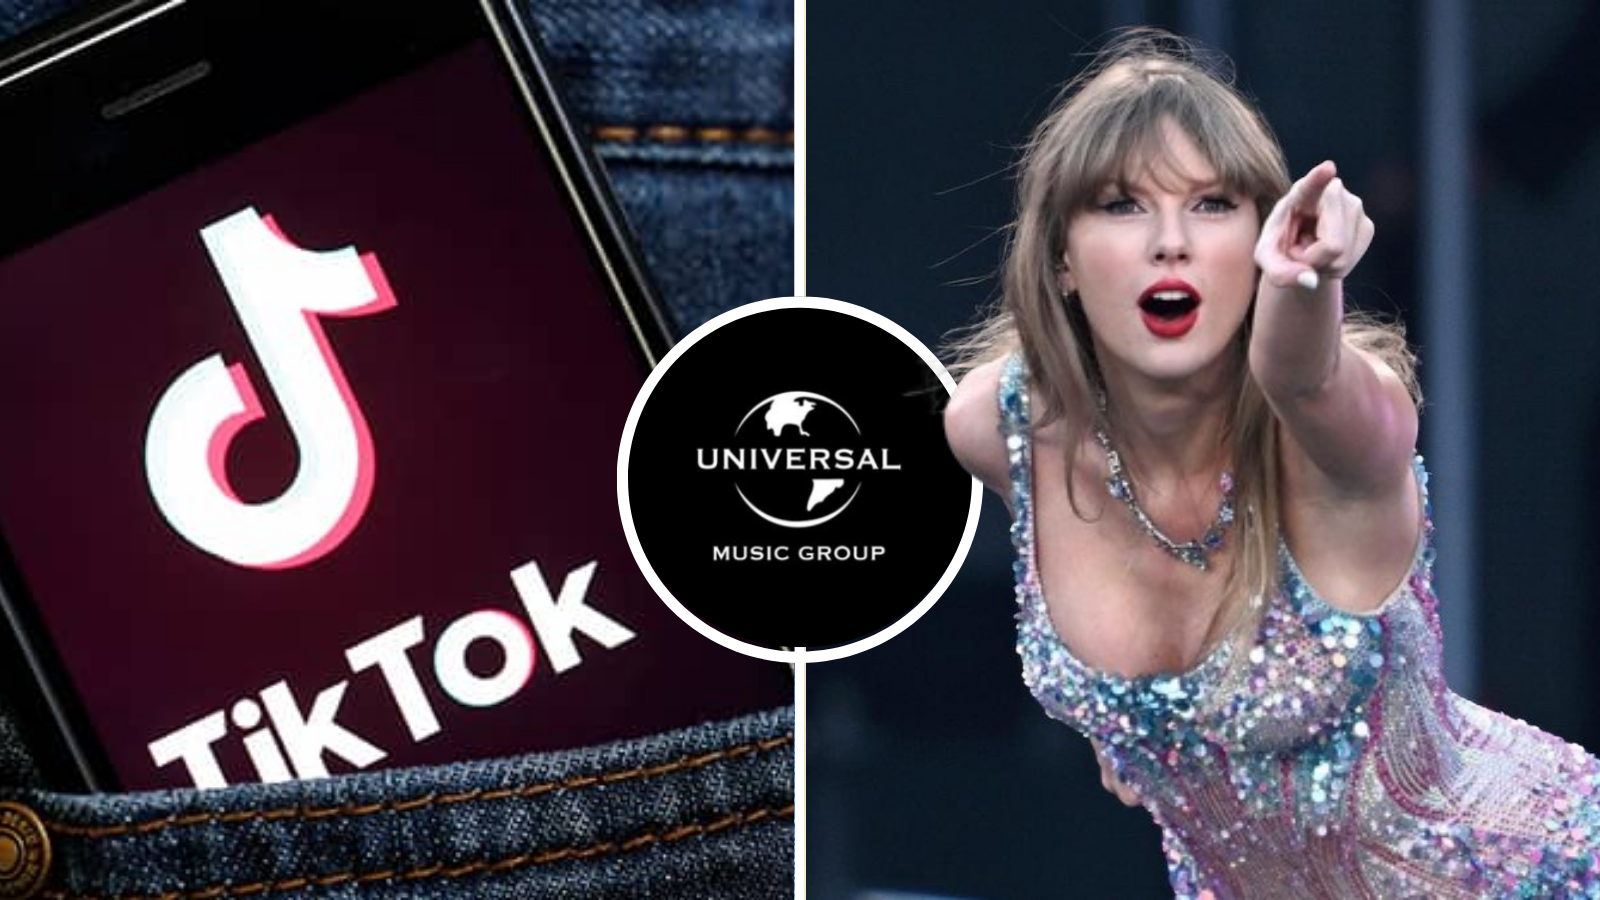 Universal Music Group acuerdo TikTok